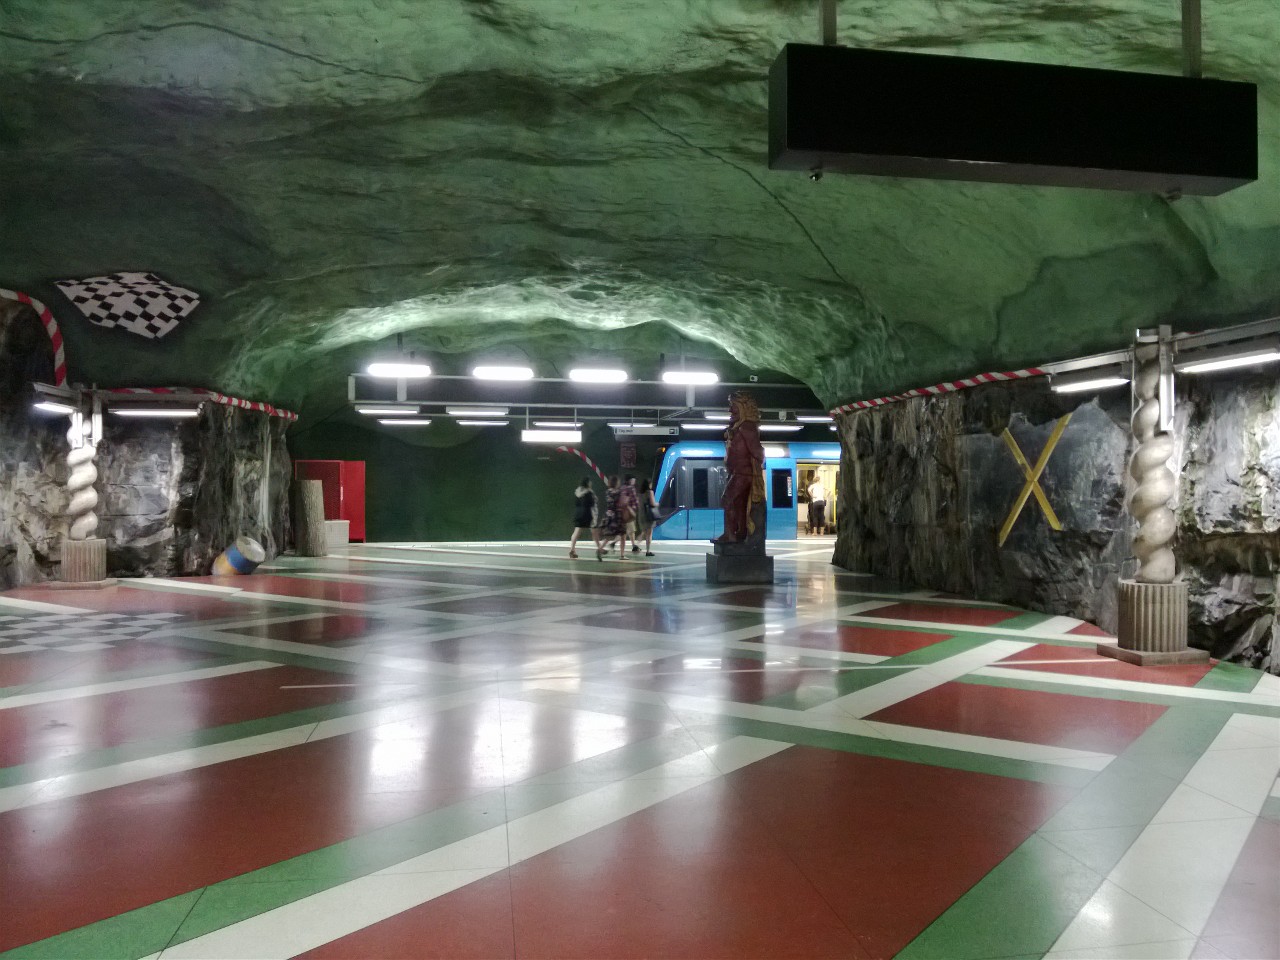 Besonders schick fanden wir außerdem die Gestaltung der U-Bahn Stationen.